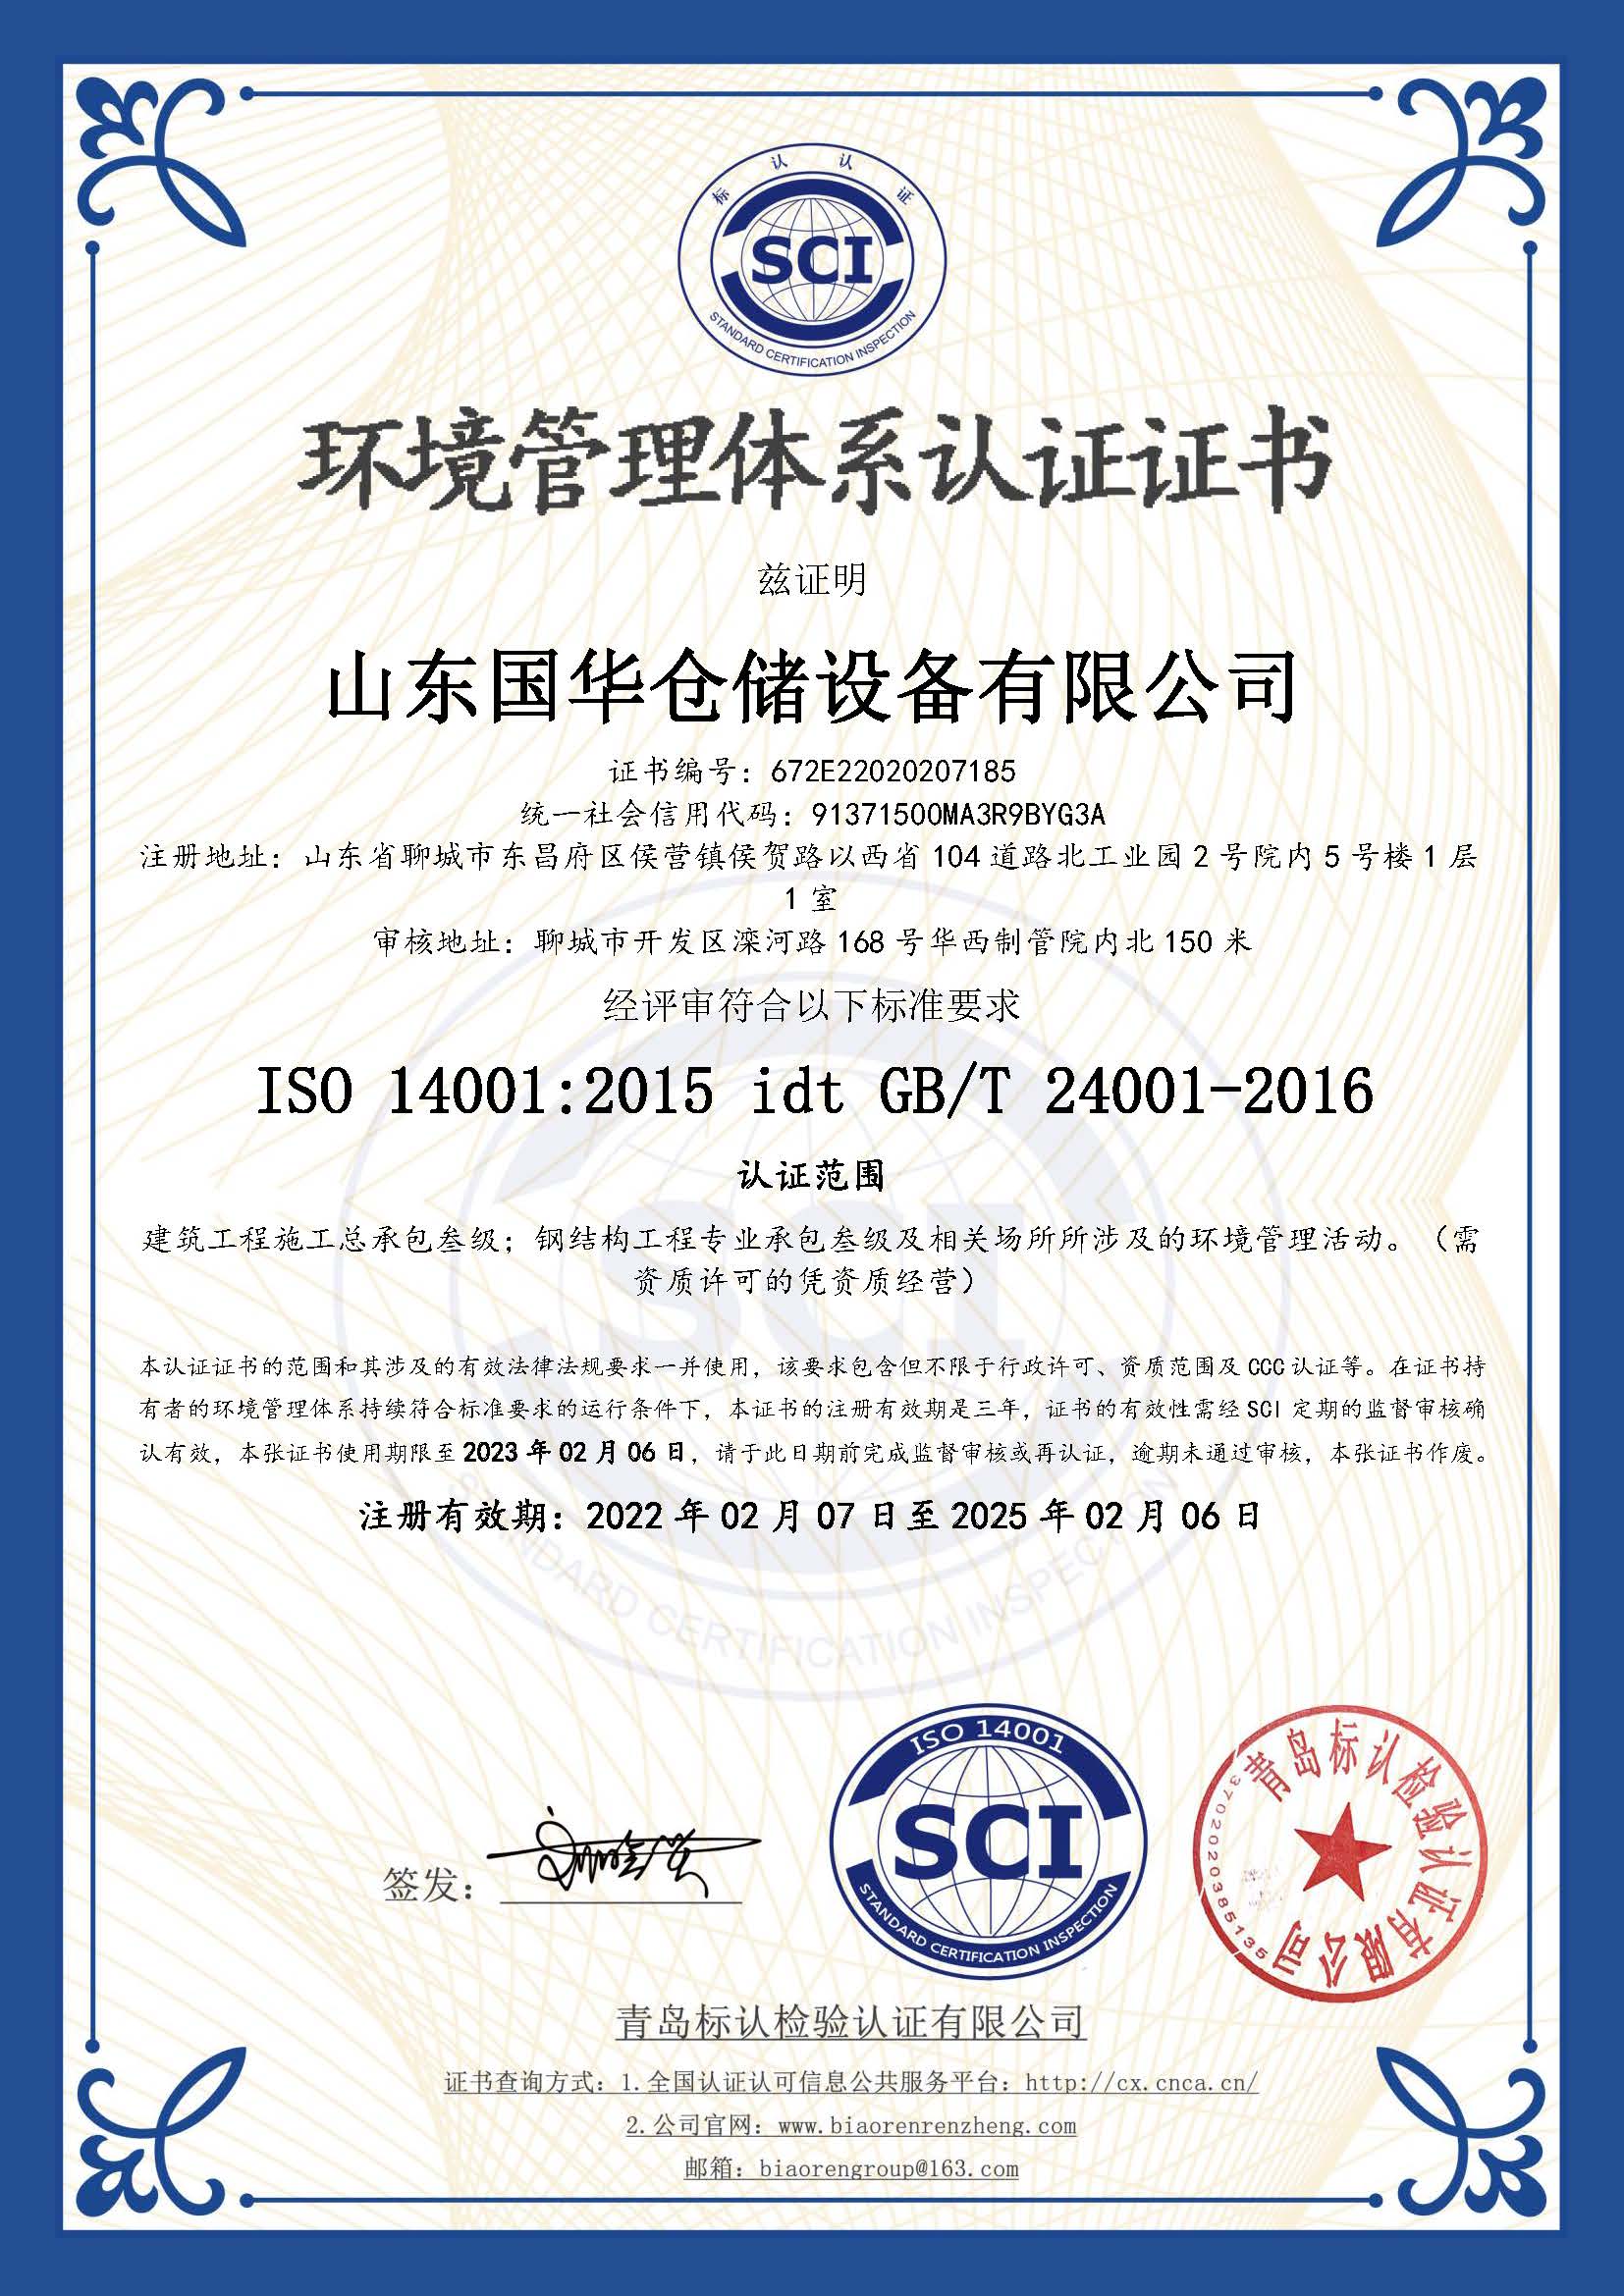 温州钢板仓环境管理体系认证证书